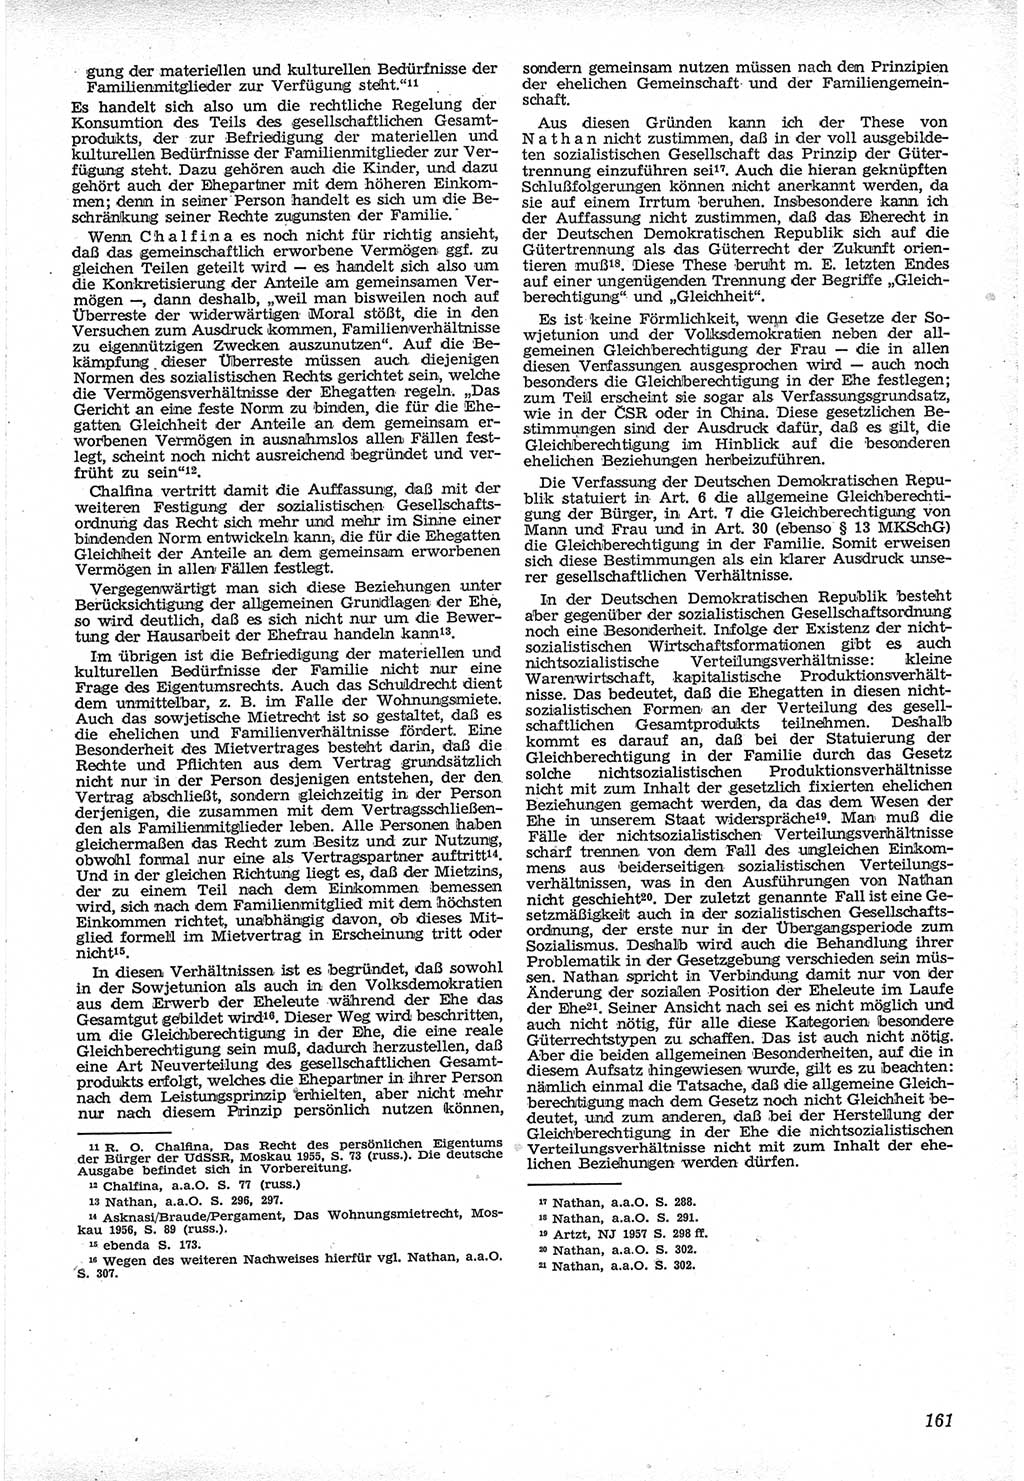 Neue Justiz (NJ), Zeitschrift für Recht und Rechtswissenschaft [Deutsche Demokratische Republik (DDR)], 12. Jahrgang 1958, Seite 161 (NJ DDR 1958, S. 161)